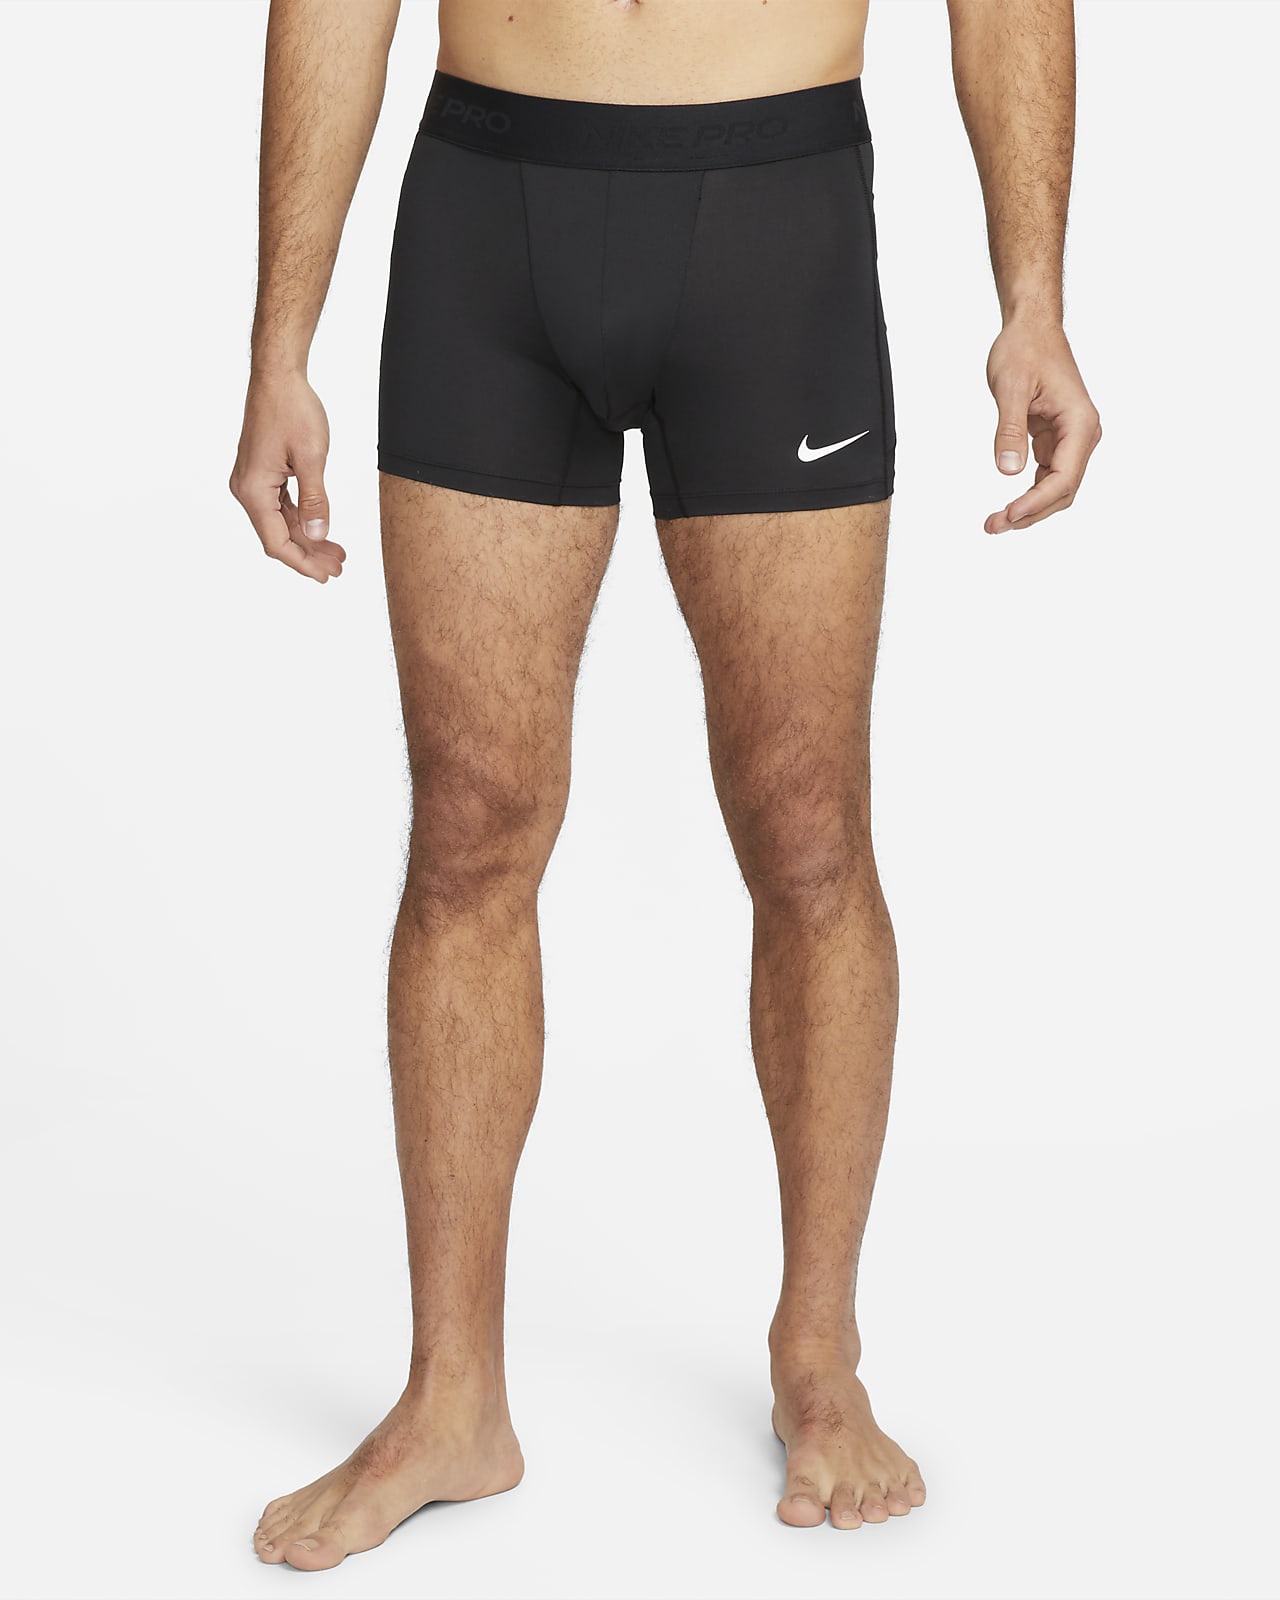 Shorts con ropa interior Dri-FIT para hombre Nike Pro. Nike MX